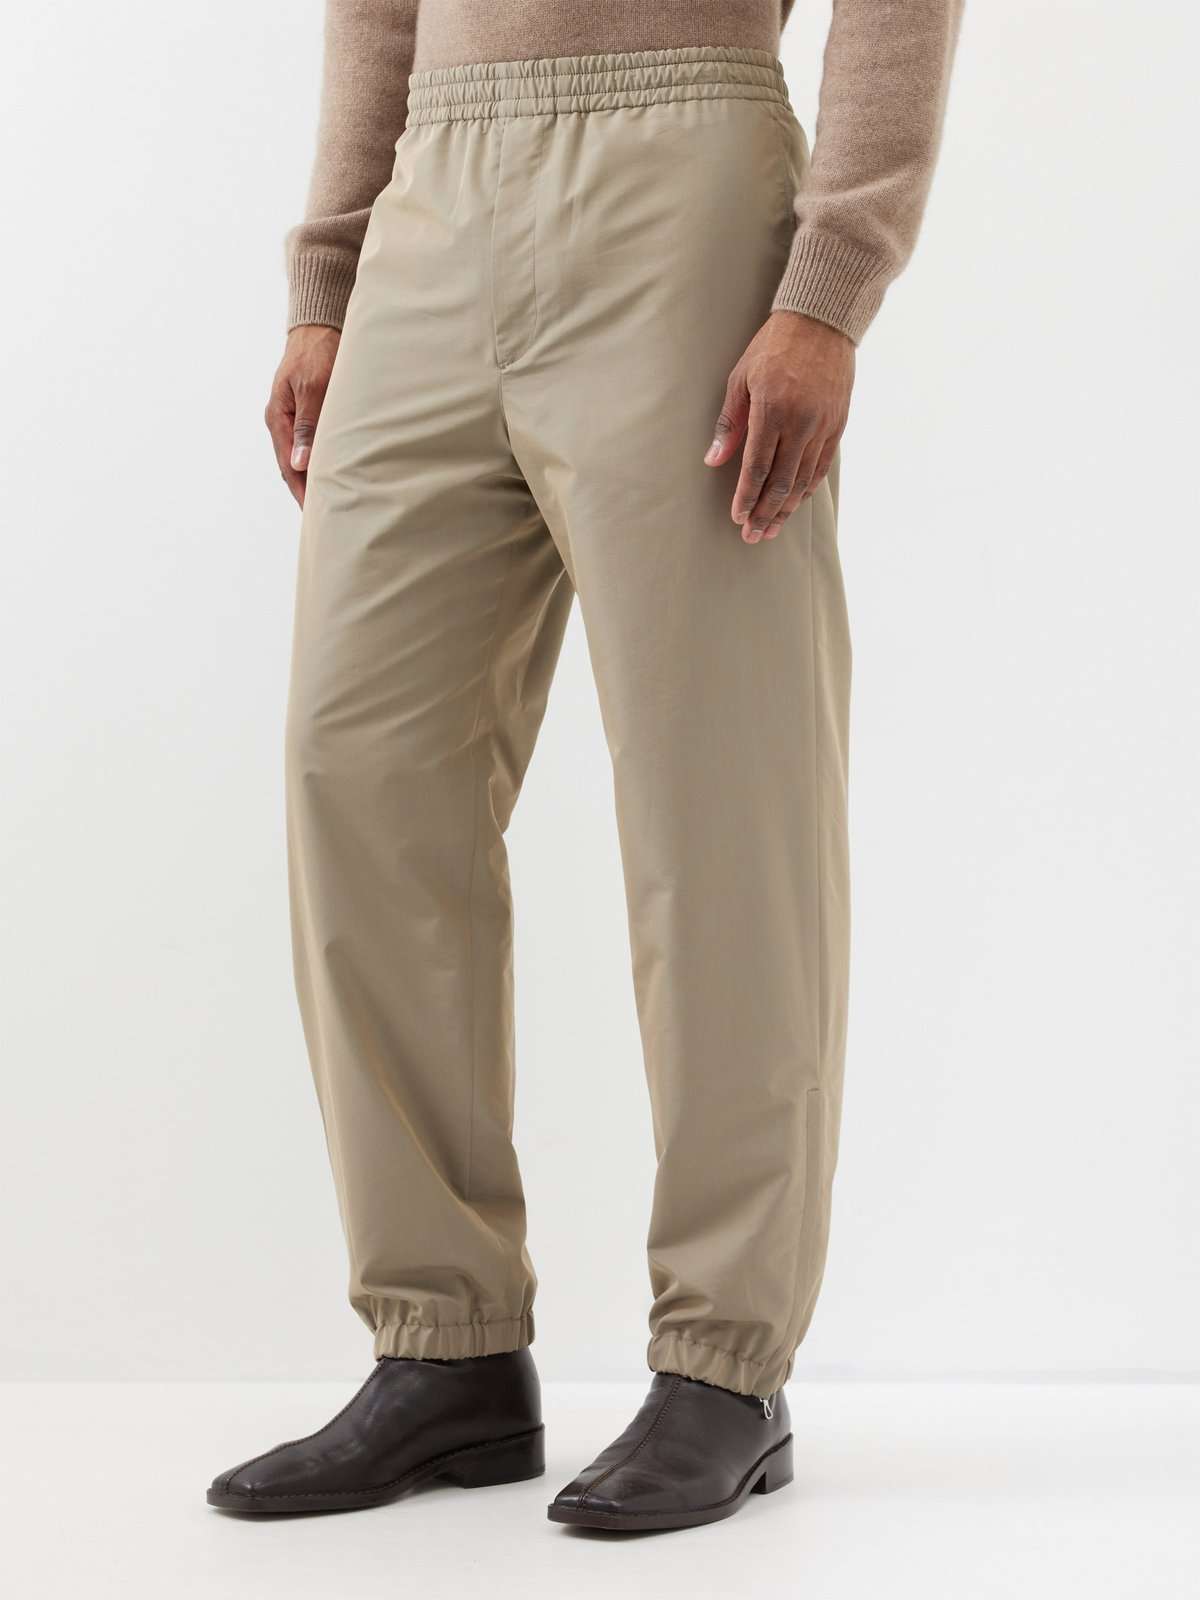 Габардиновые брюки Finx с эластичной талией